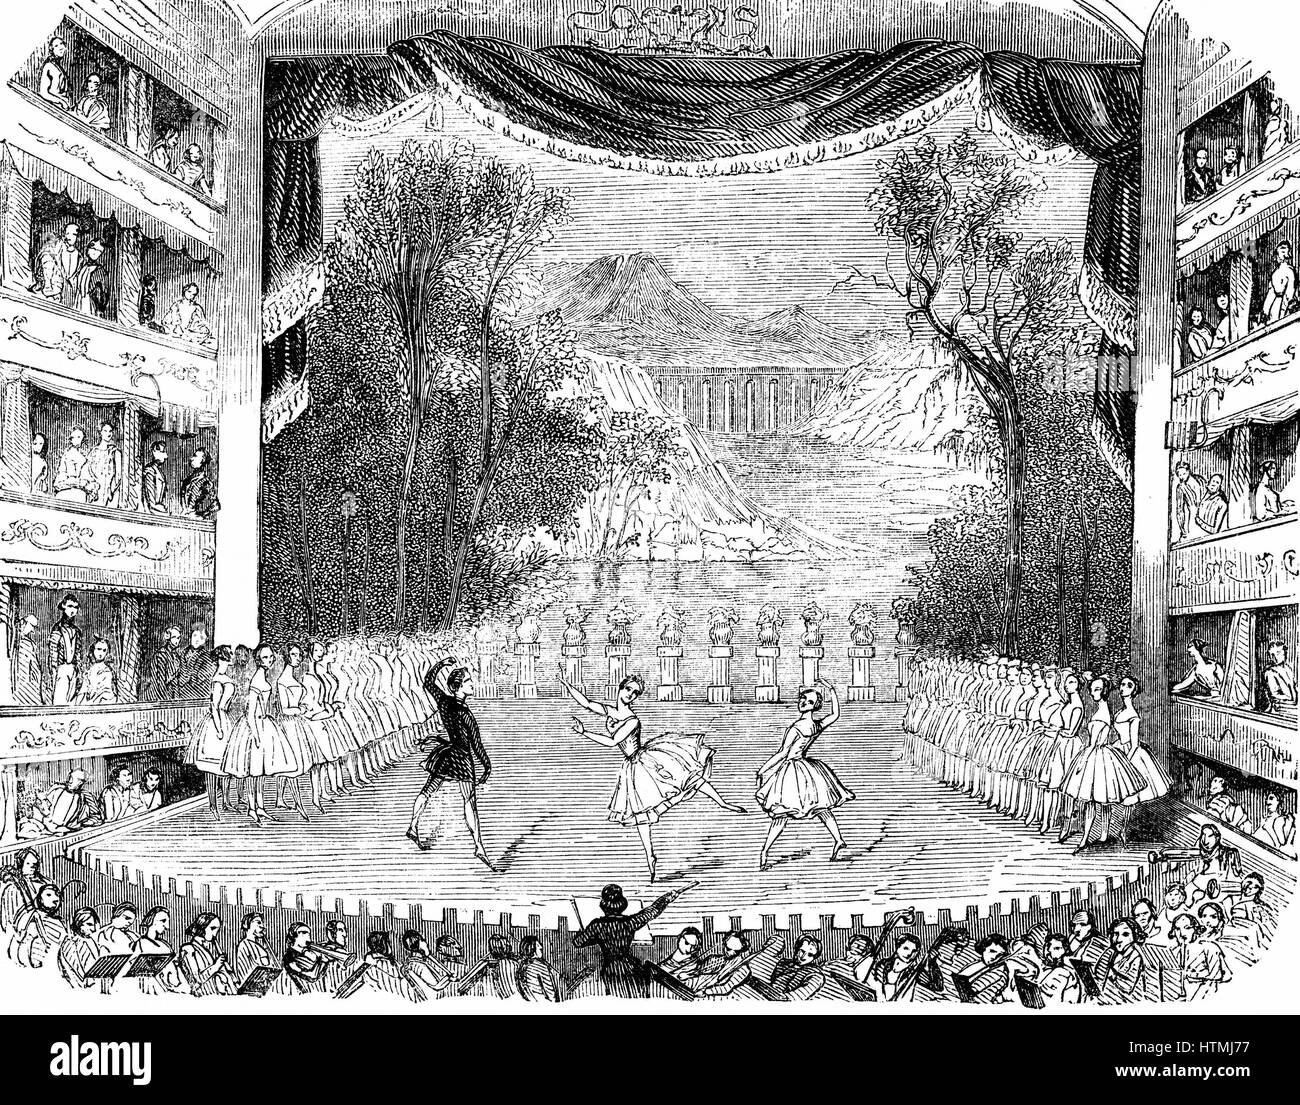 Jules Perrot (1810 – 1894) französischen Tänzer, Choreograf und Ballettmeister, und Fanny (Francesca) Cerito oder Cerrito (c1817-1909) italienische Ballerina, erscheinen in "L ' Eleve de l 'Amour" ("die Schüler der Liebe") am Her Majesty Theatre, London, 1842. Musik von Engl Stockfoto